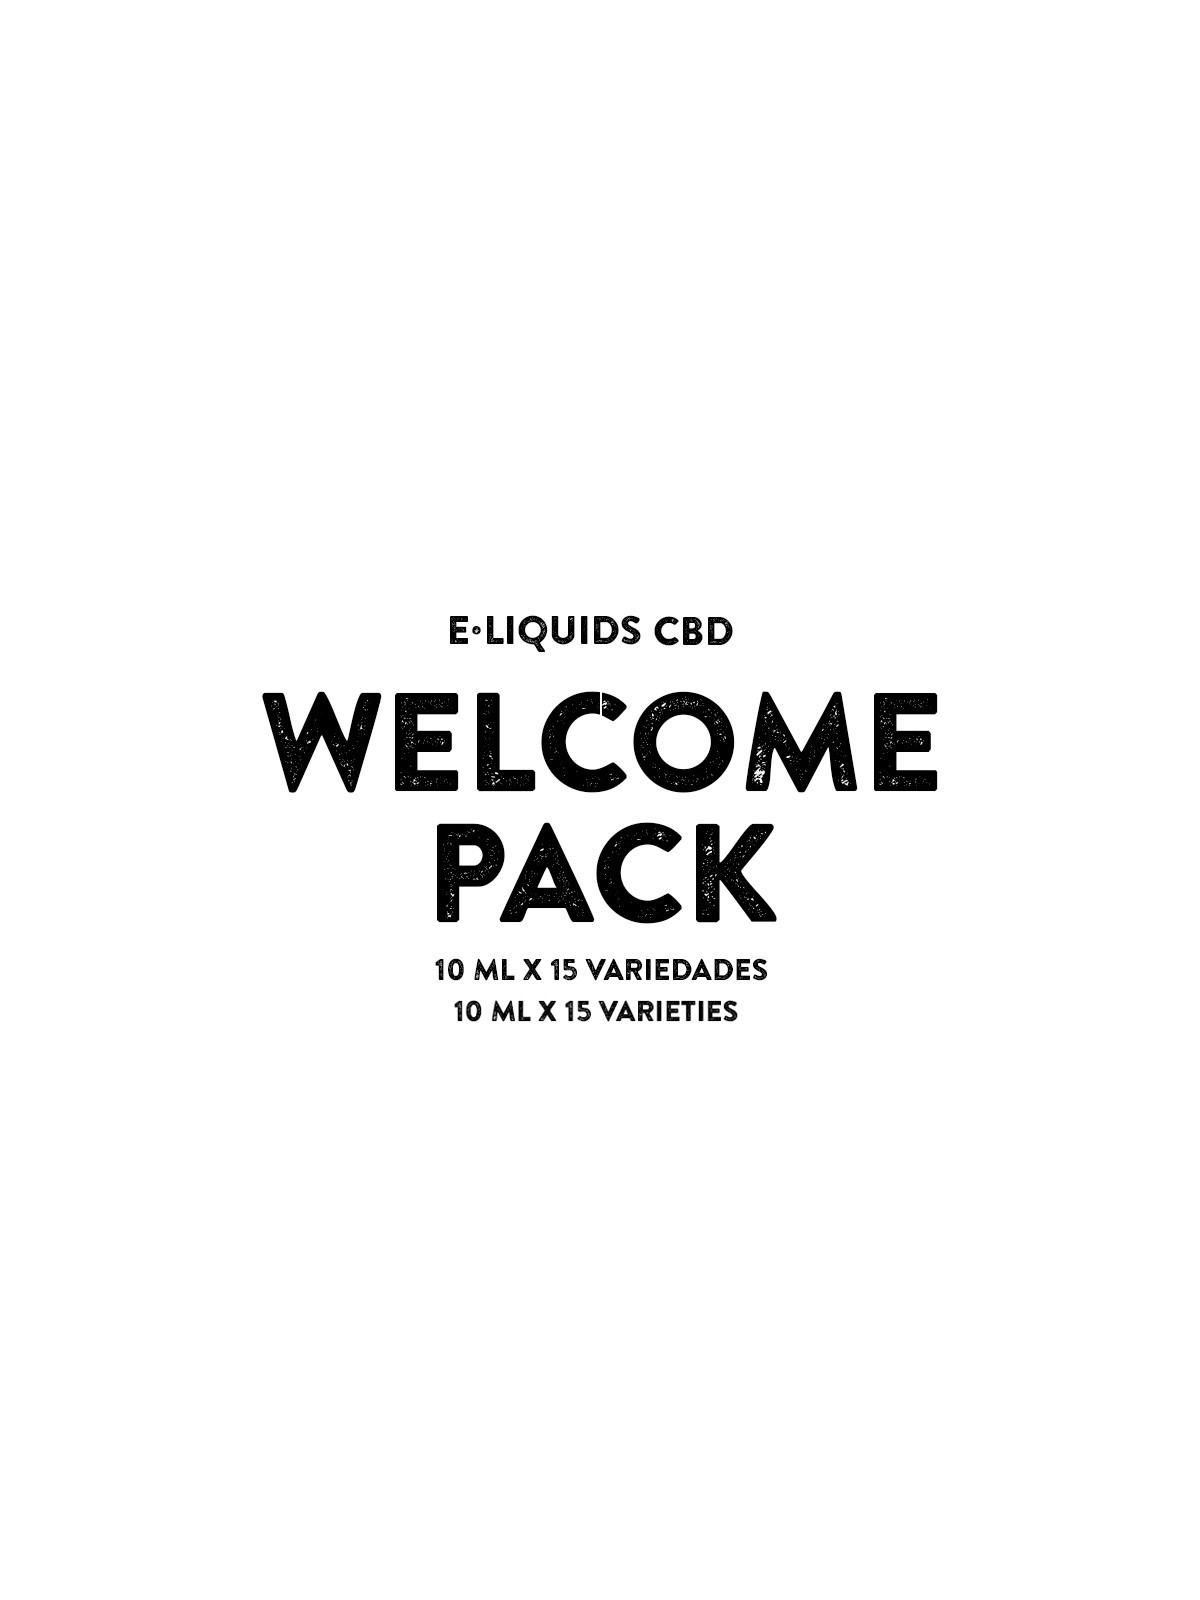 Pack Bienvenida E-liquid CBD - Cali Terpenes